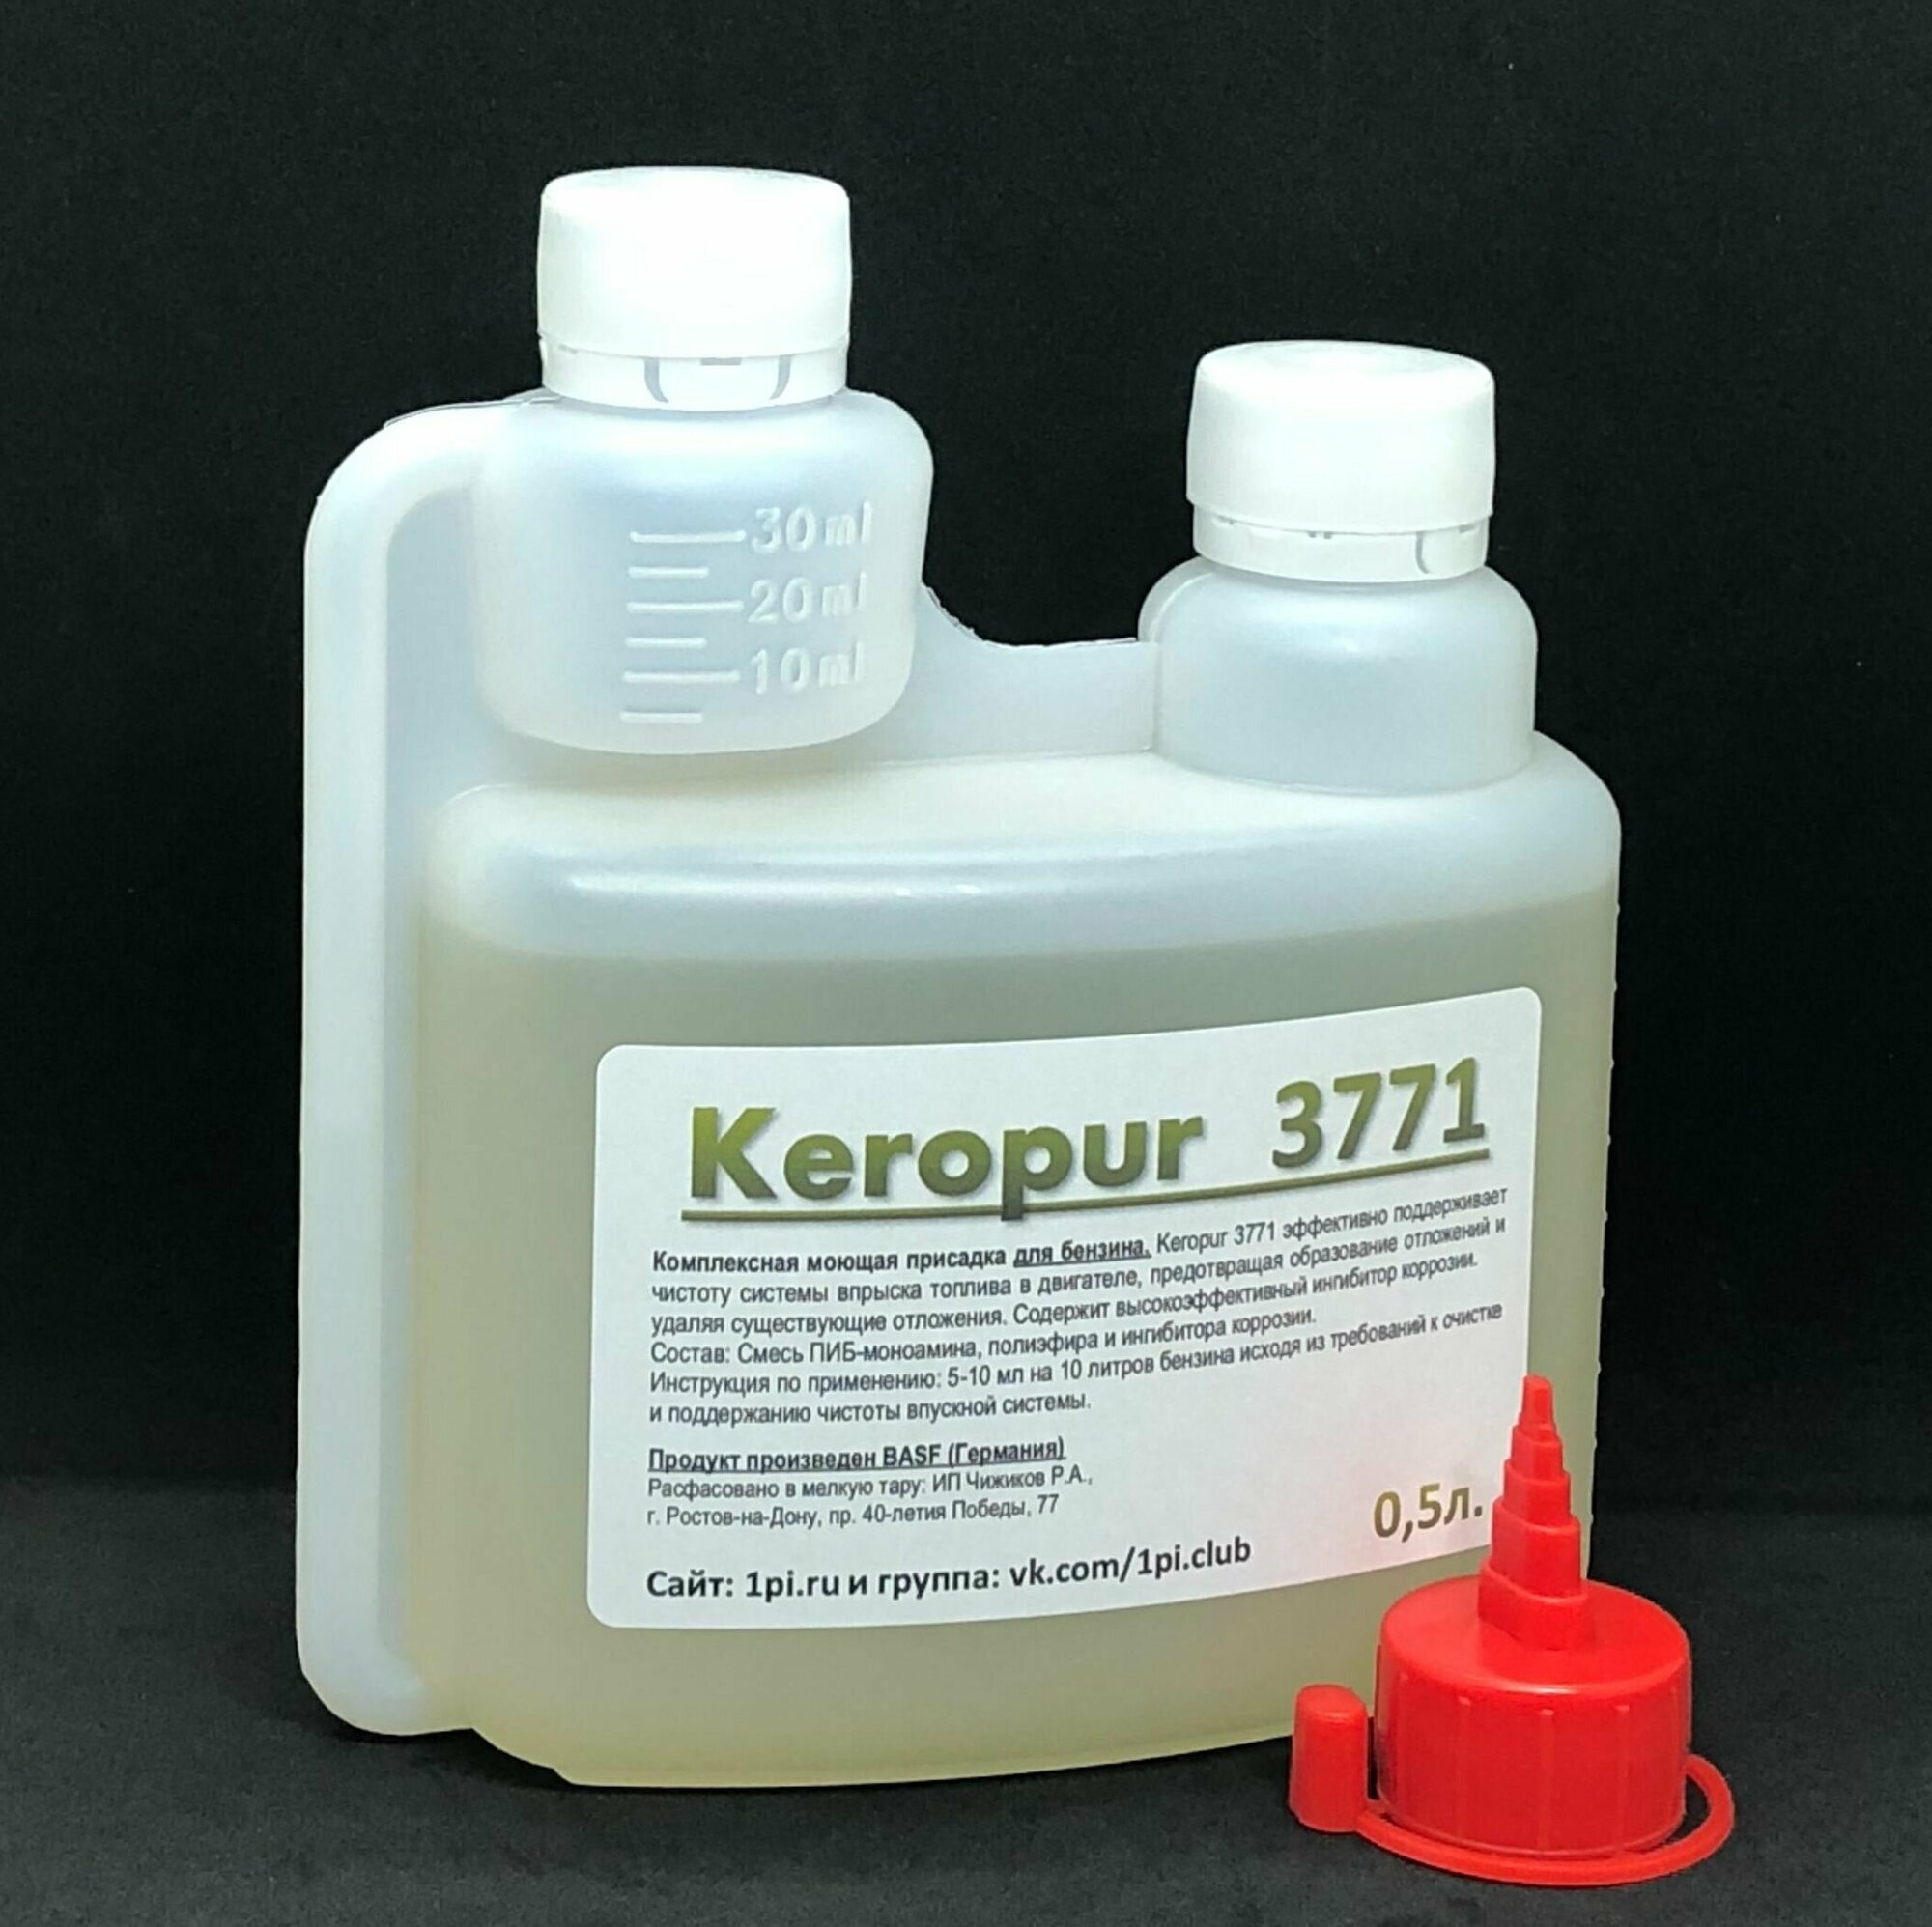 Keropur 3771 BASF промышленная комплексная присадка для бензина 0,5л.